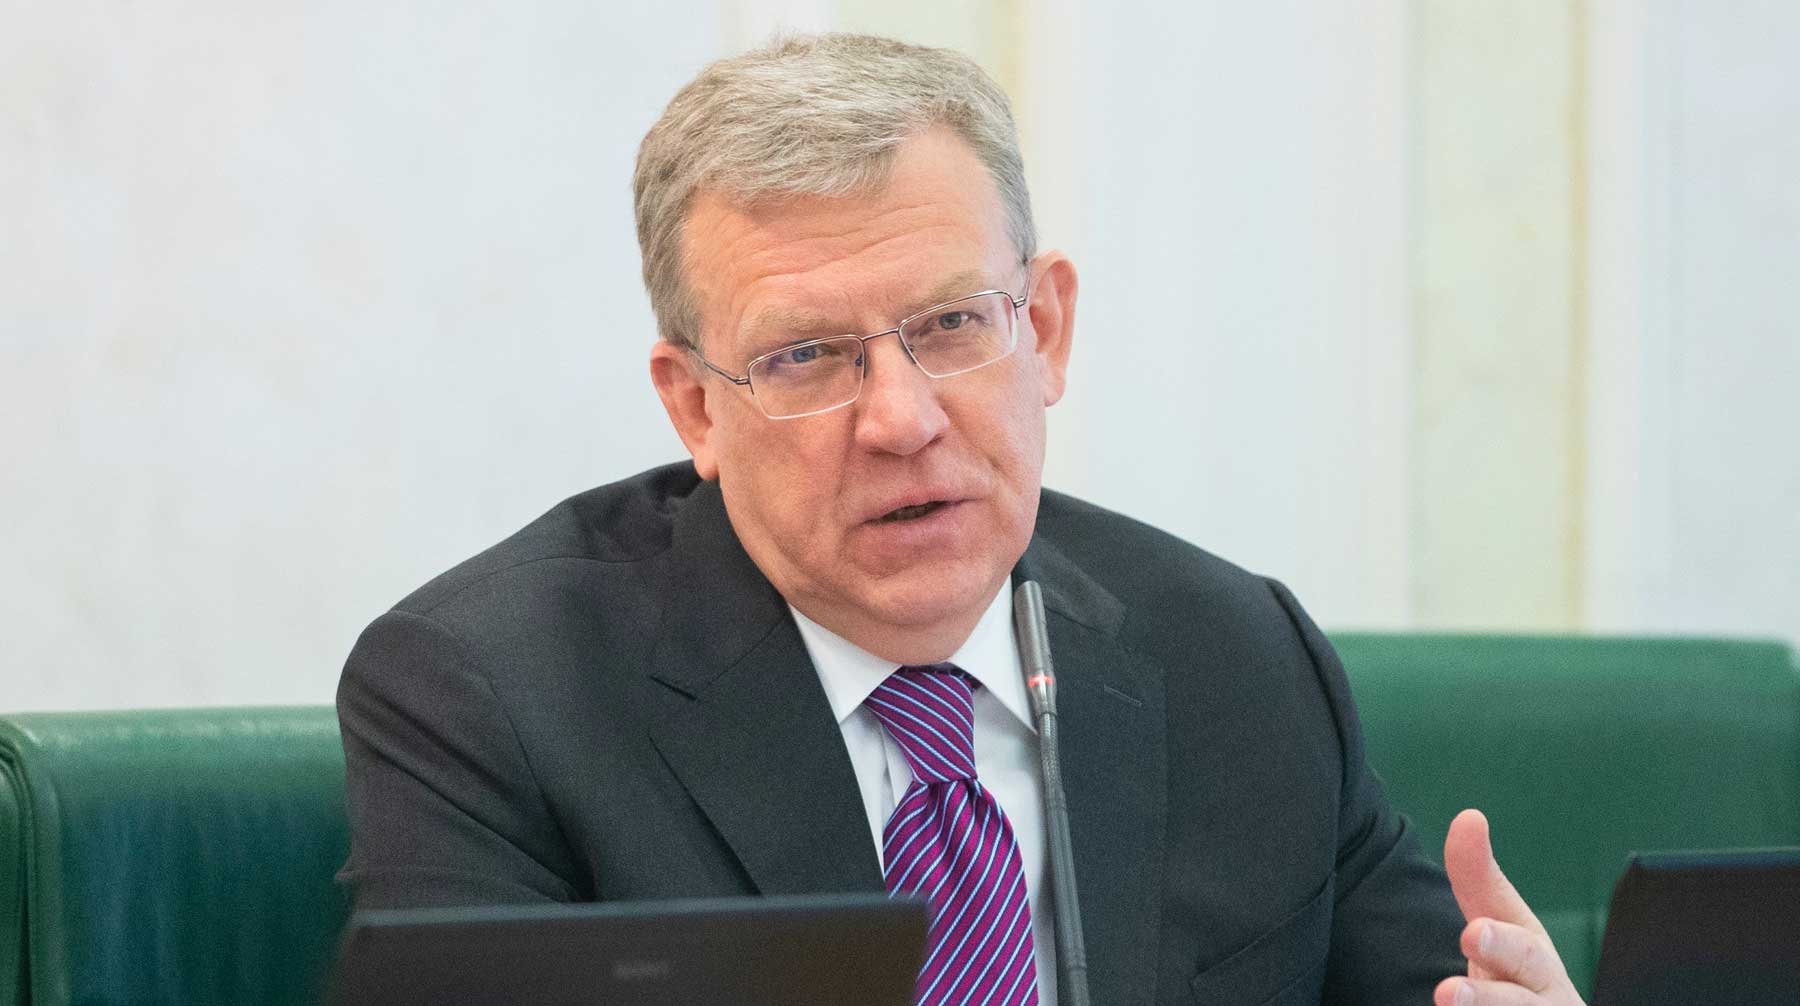 Глава Счетной палаты РФ считает, что через подобные методы сводятся счеты с конкурентами Алексей Кудрин